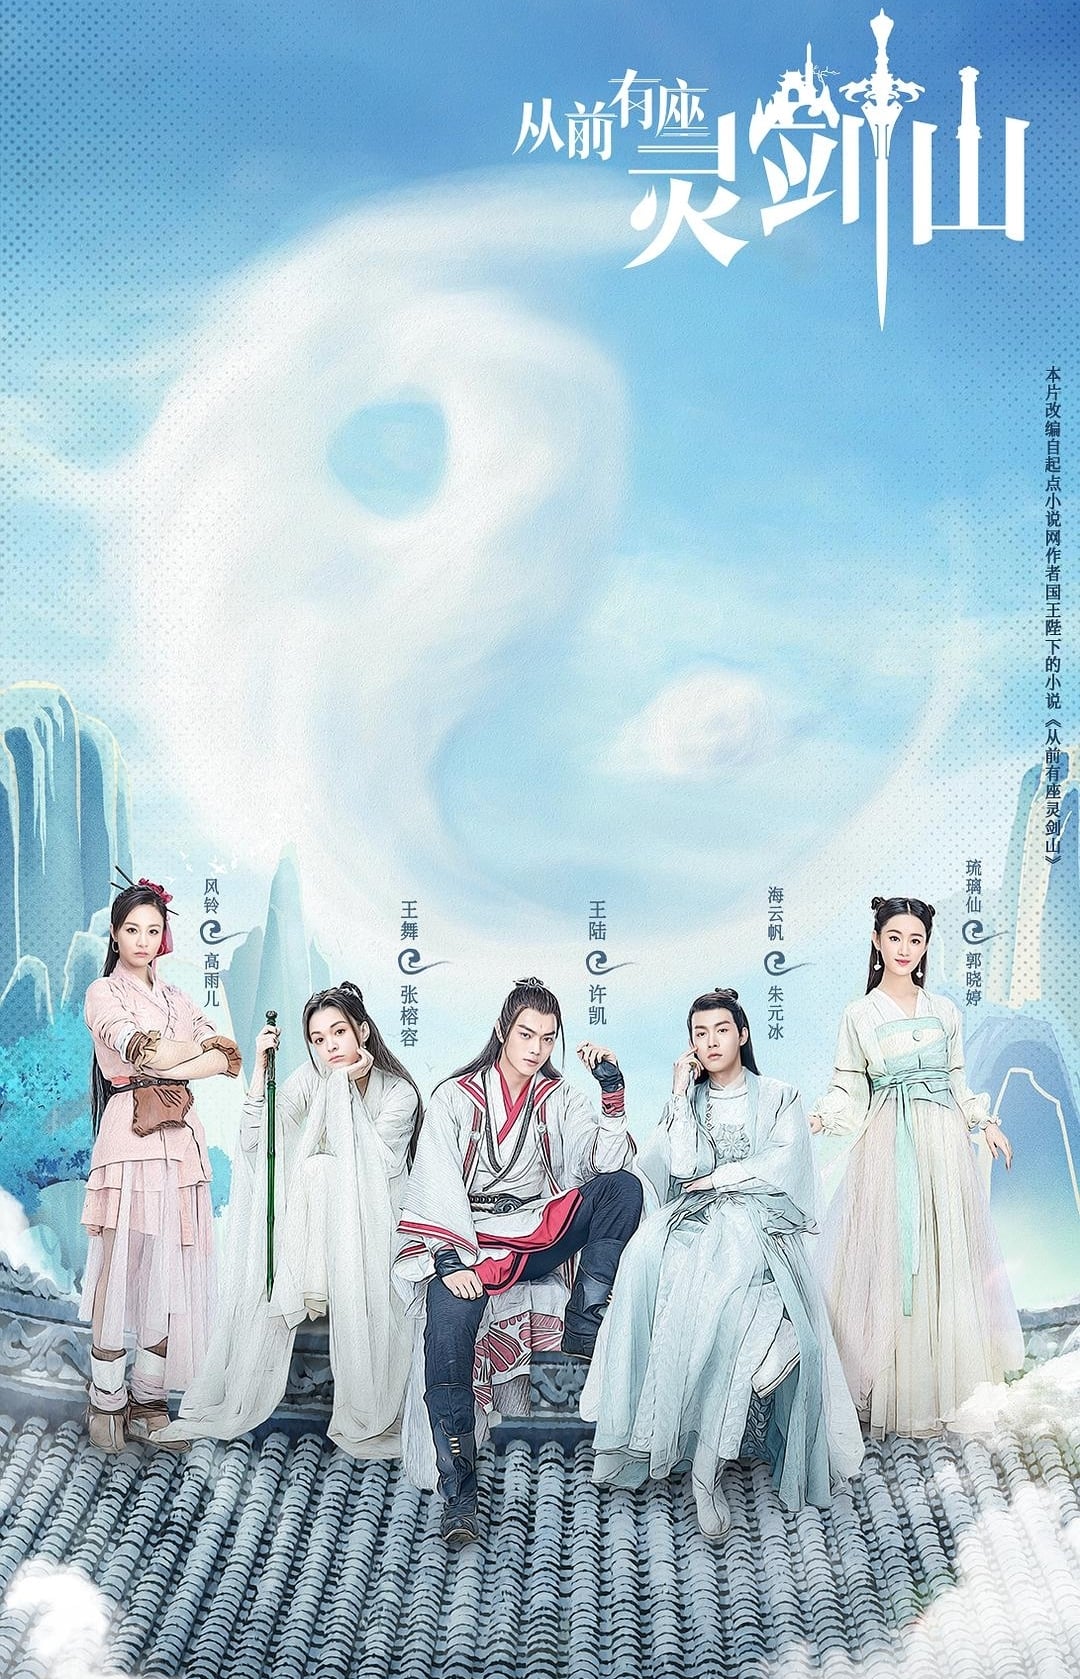 Les saisons de 从前有座灵剑山 sont-elles disponibles sur Netflix ou autre ?